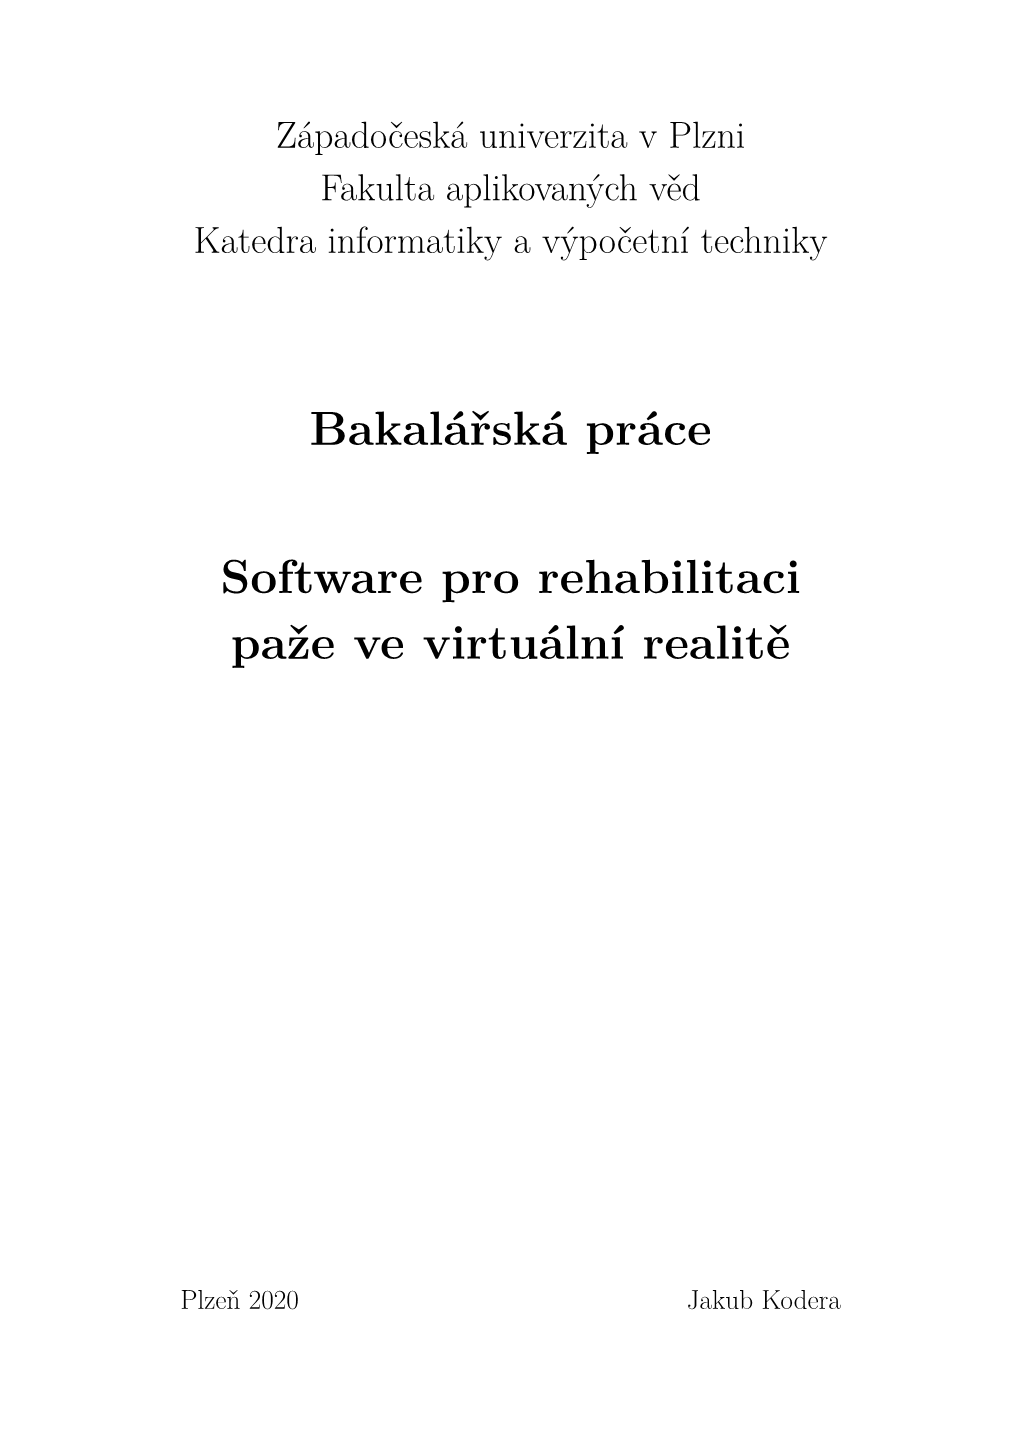 Bakalářská Práce Software Pro Rehabilitaci Paže Ve Virtuální Realitě